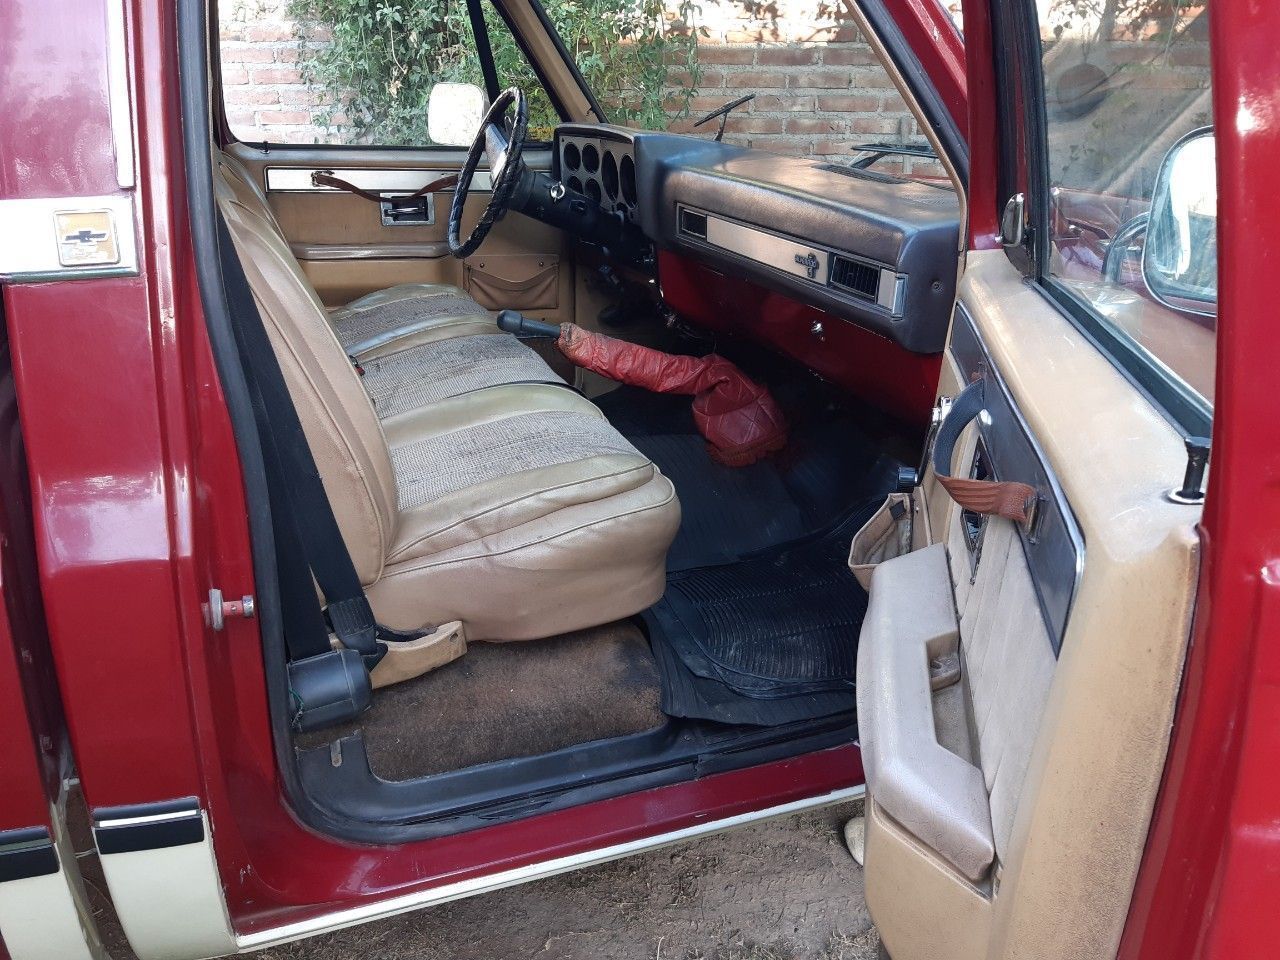 Chevrolet C10 Usada en Mendoza, deRuedas